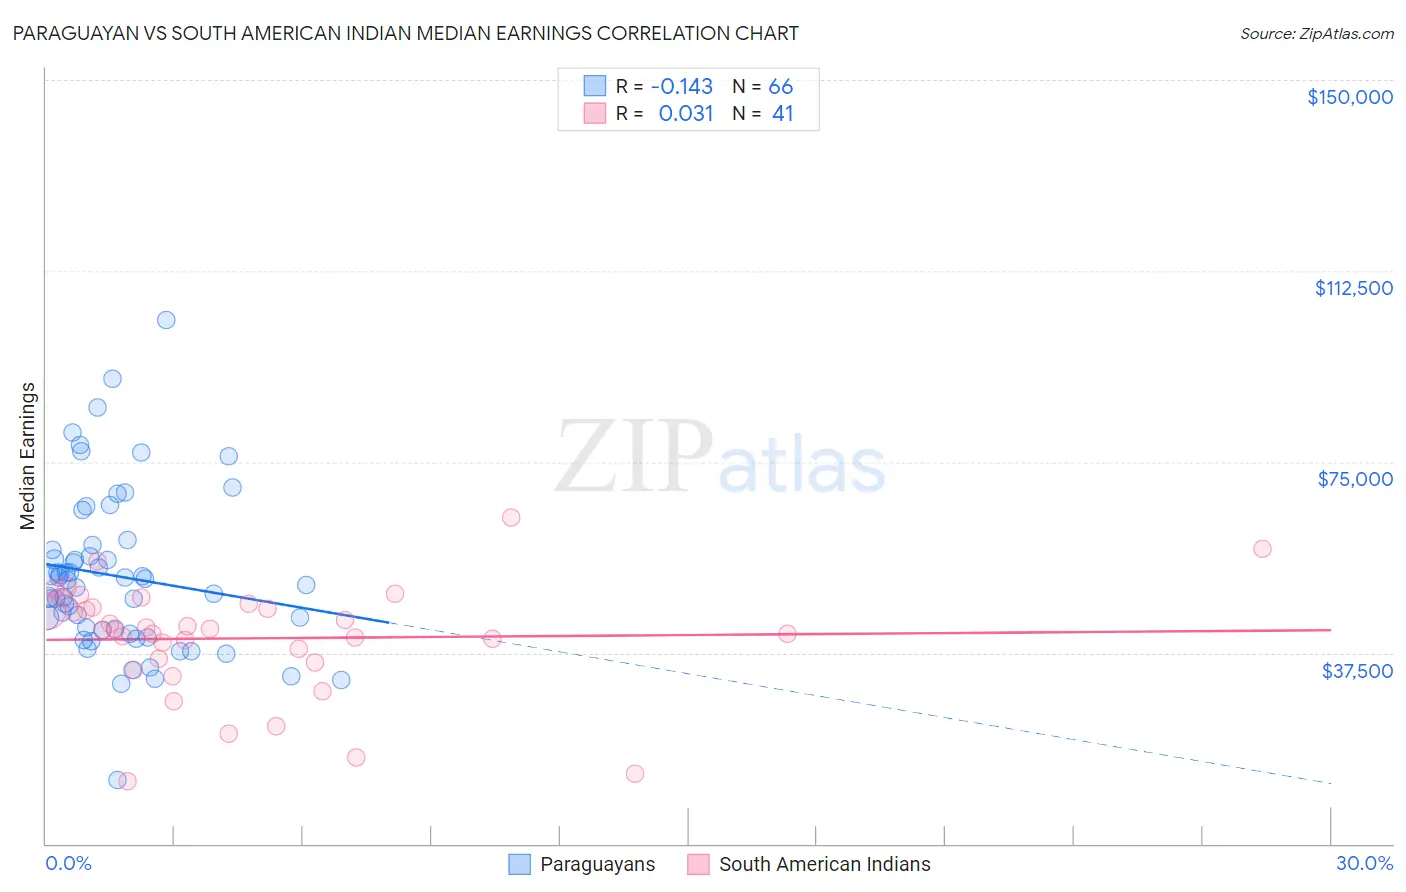 Paraguayan vs South American Indian Median Earnings